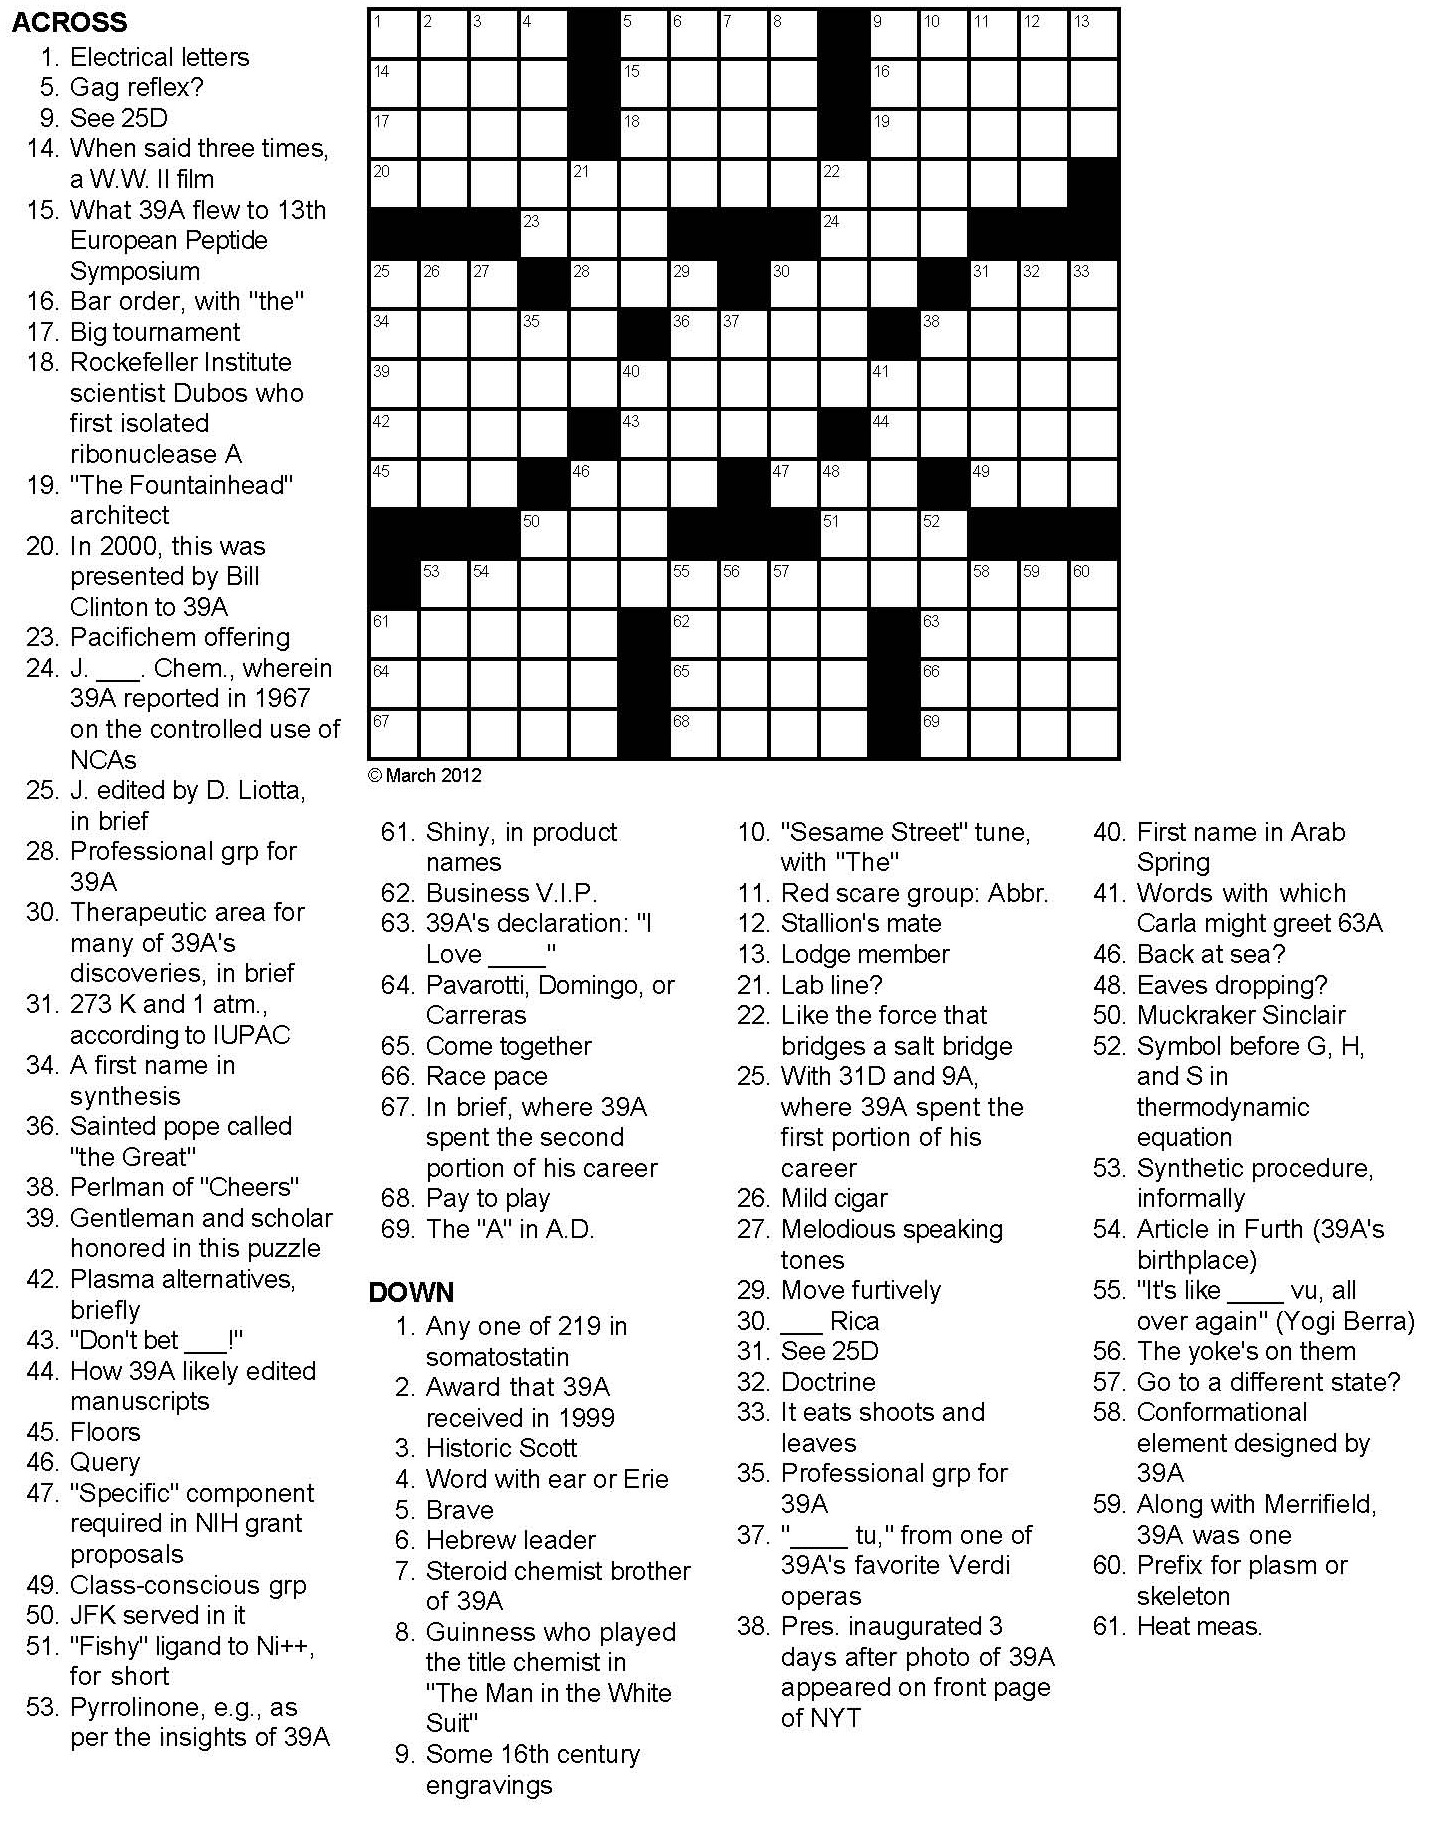 printable-crossword-puzzles-no-download-printable-crossword-puzzles